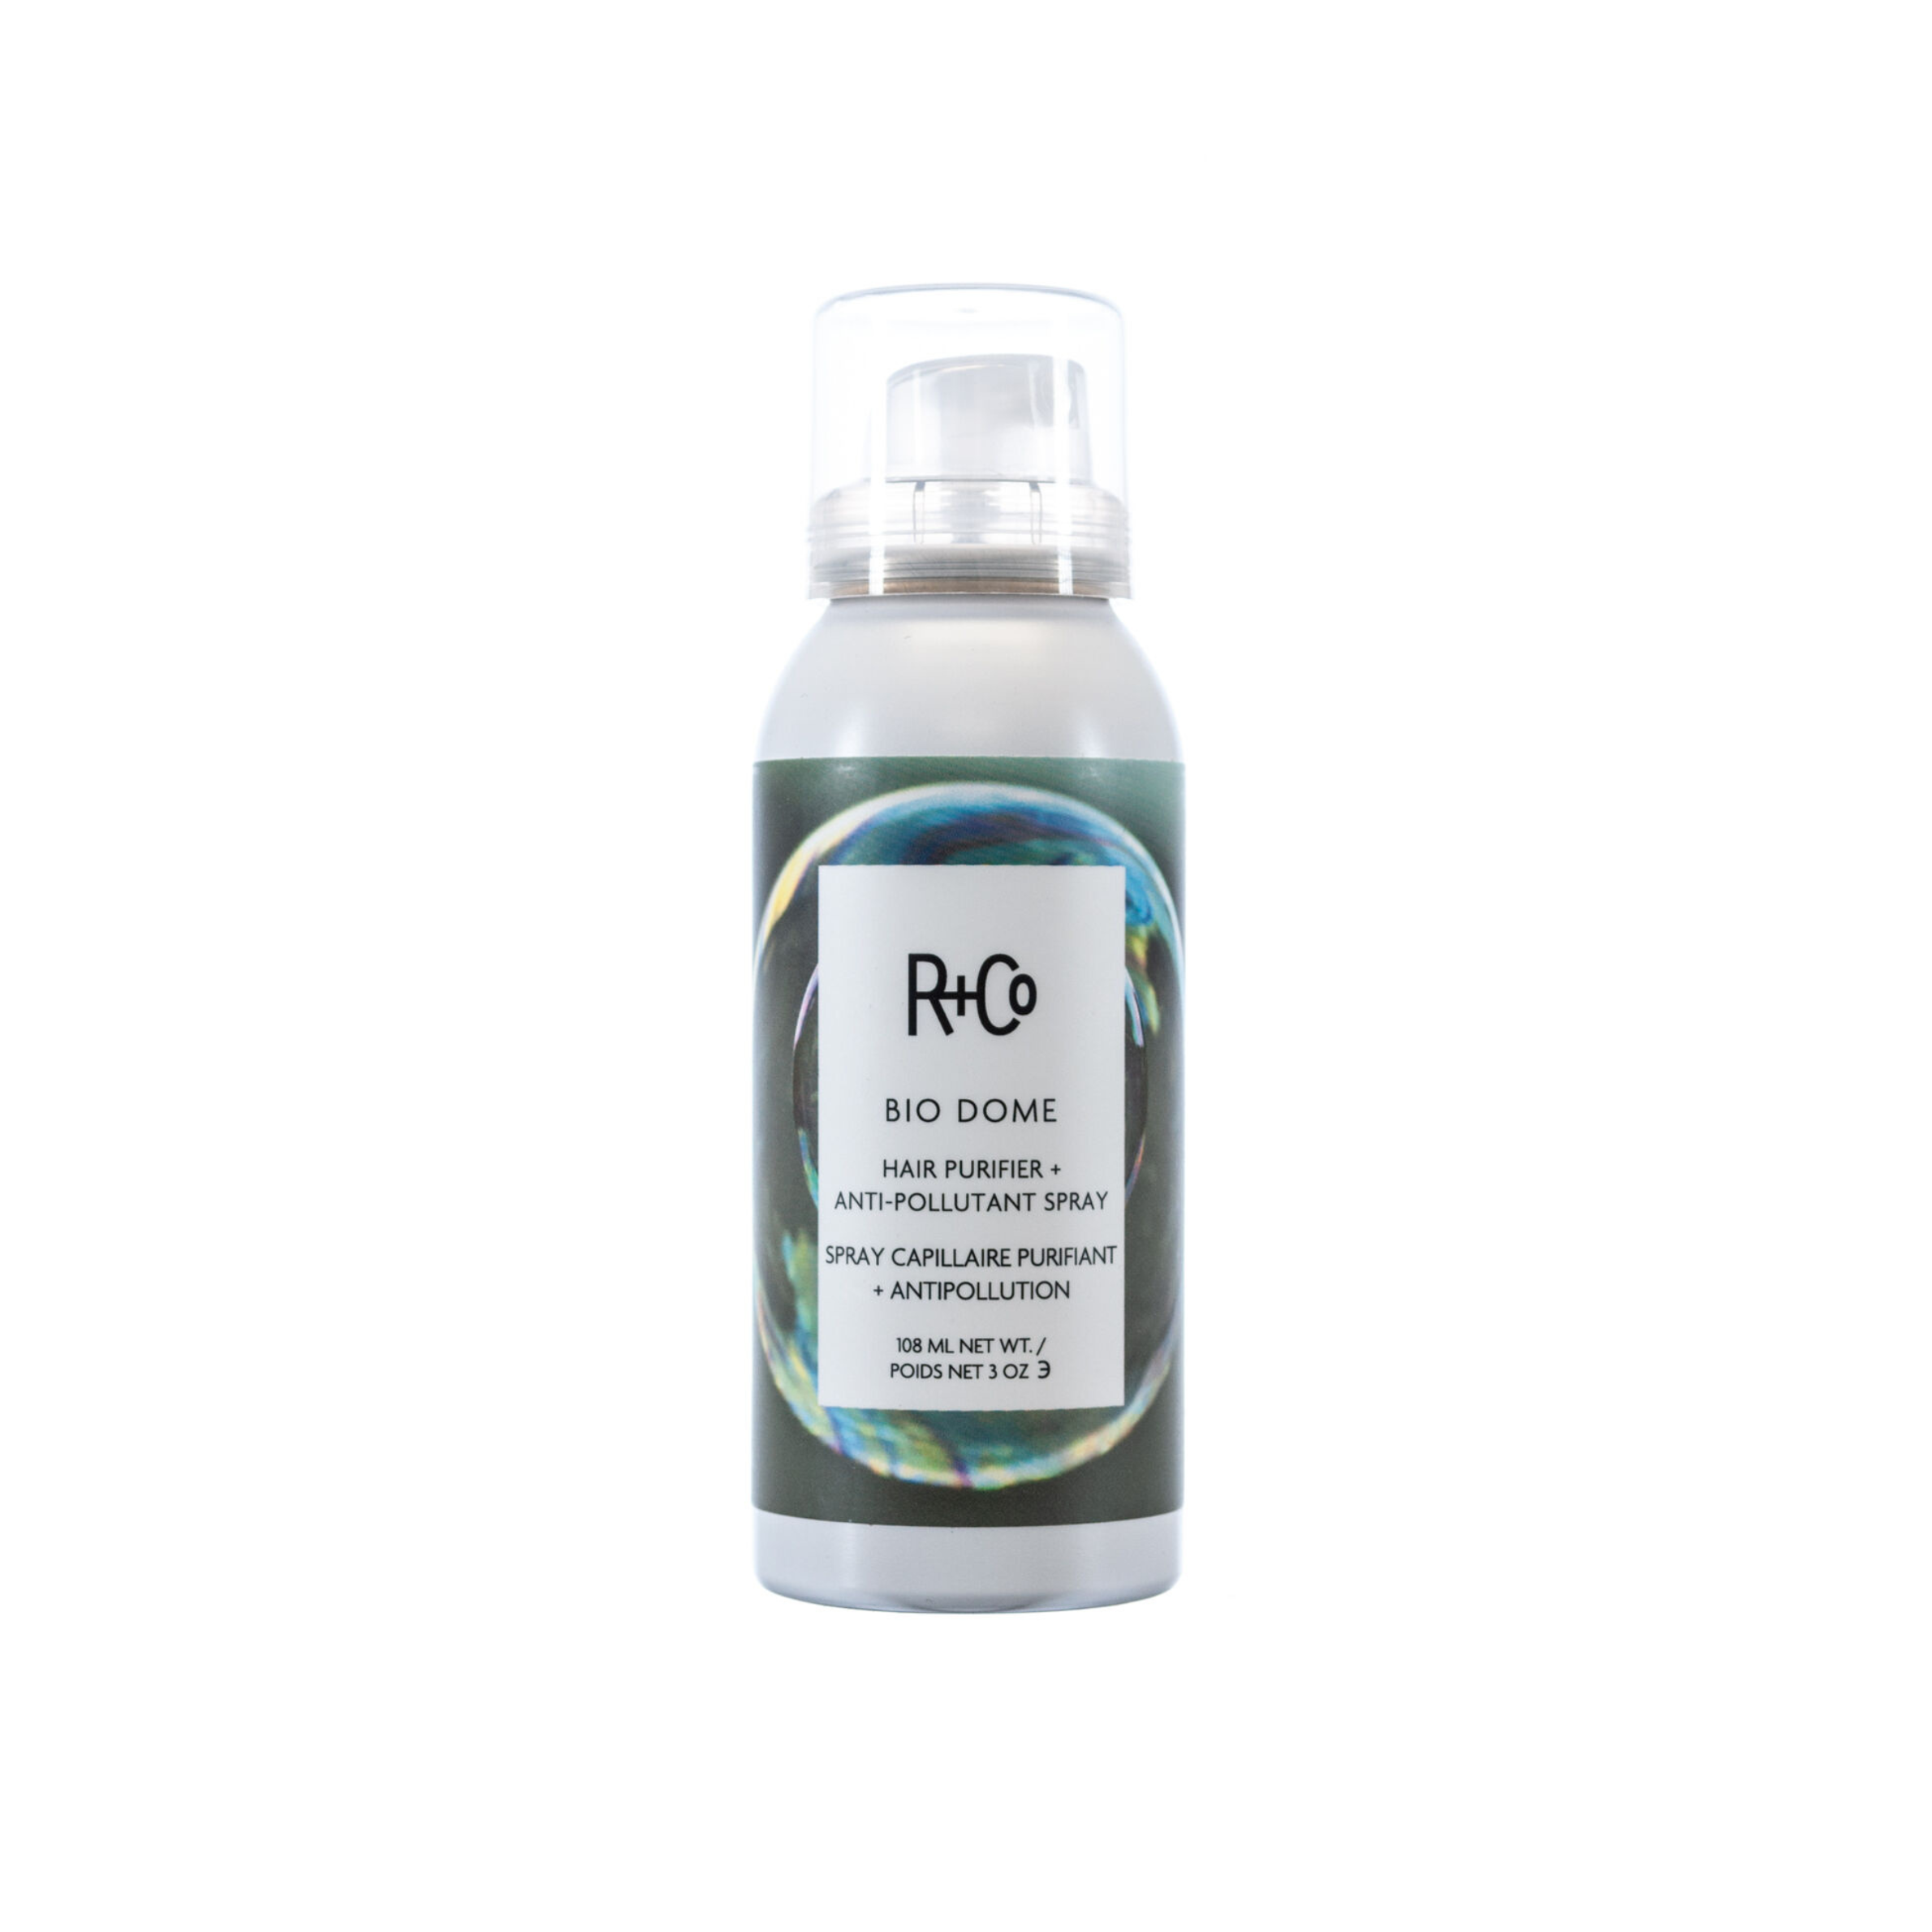 R+Co Bio Dome Hair Purifier + Anti- Pollutant Hair Spray